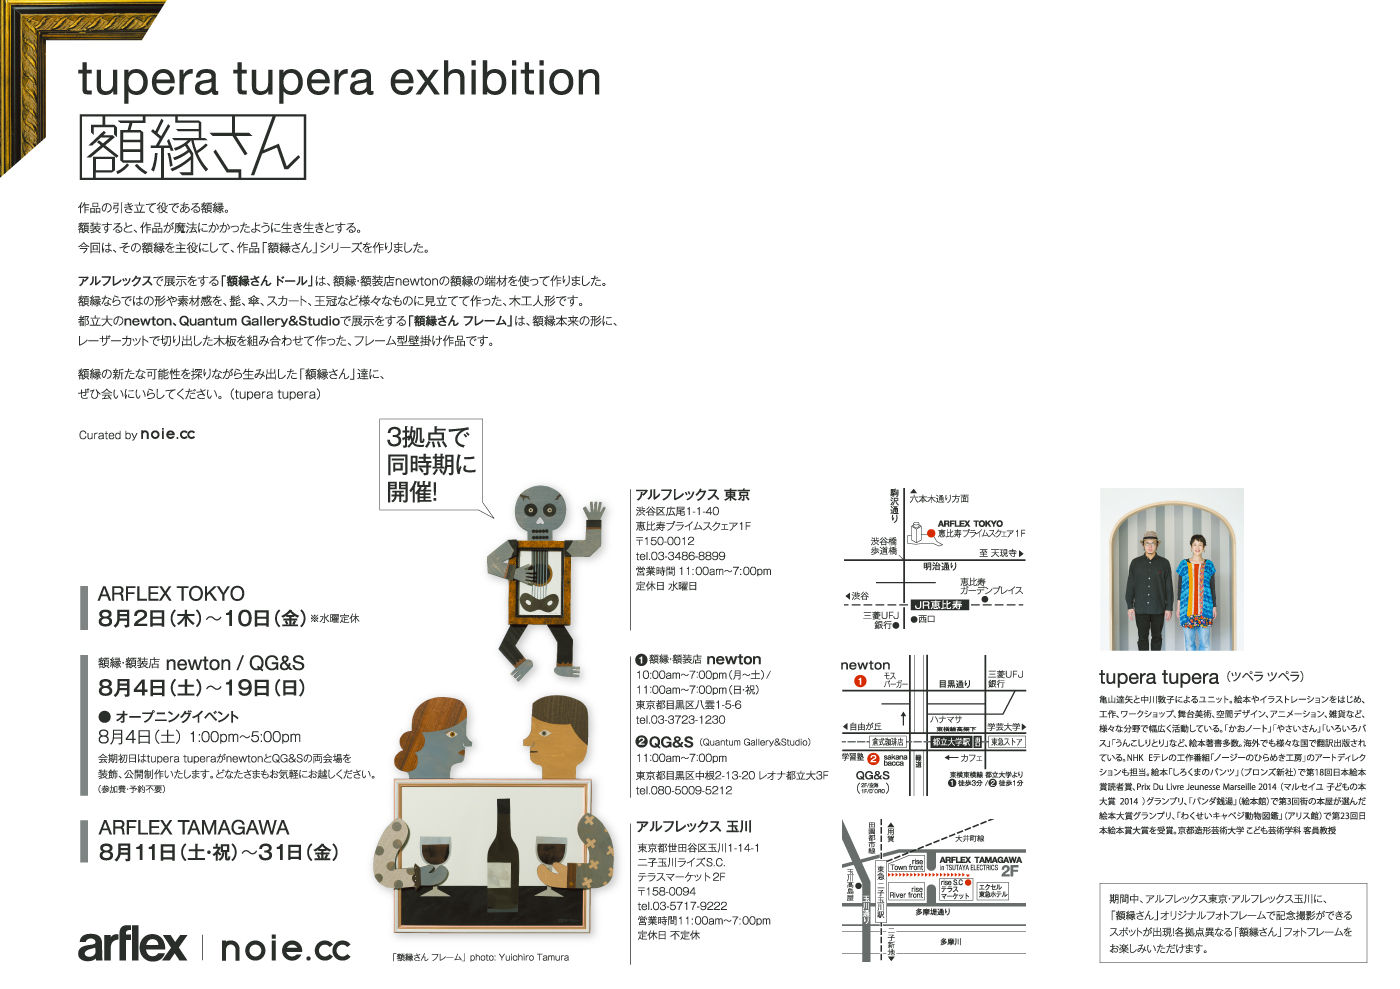 tupera tupera exhibition 額縁さん